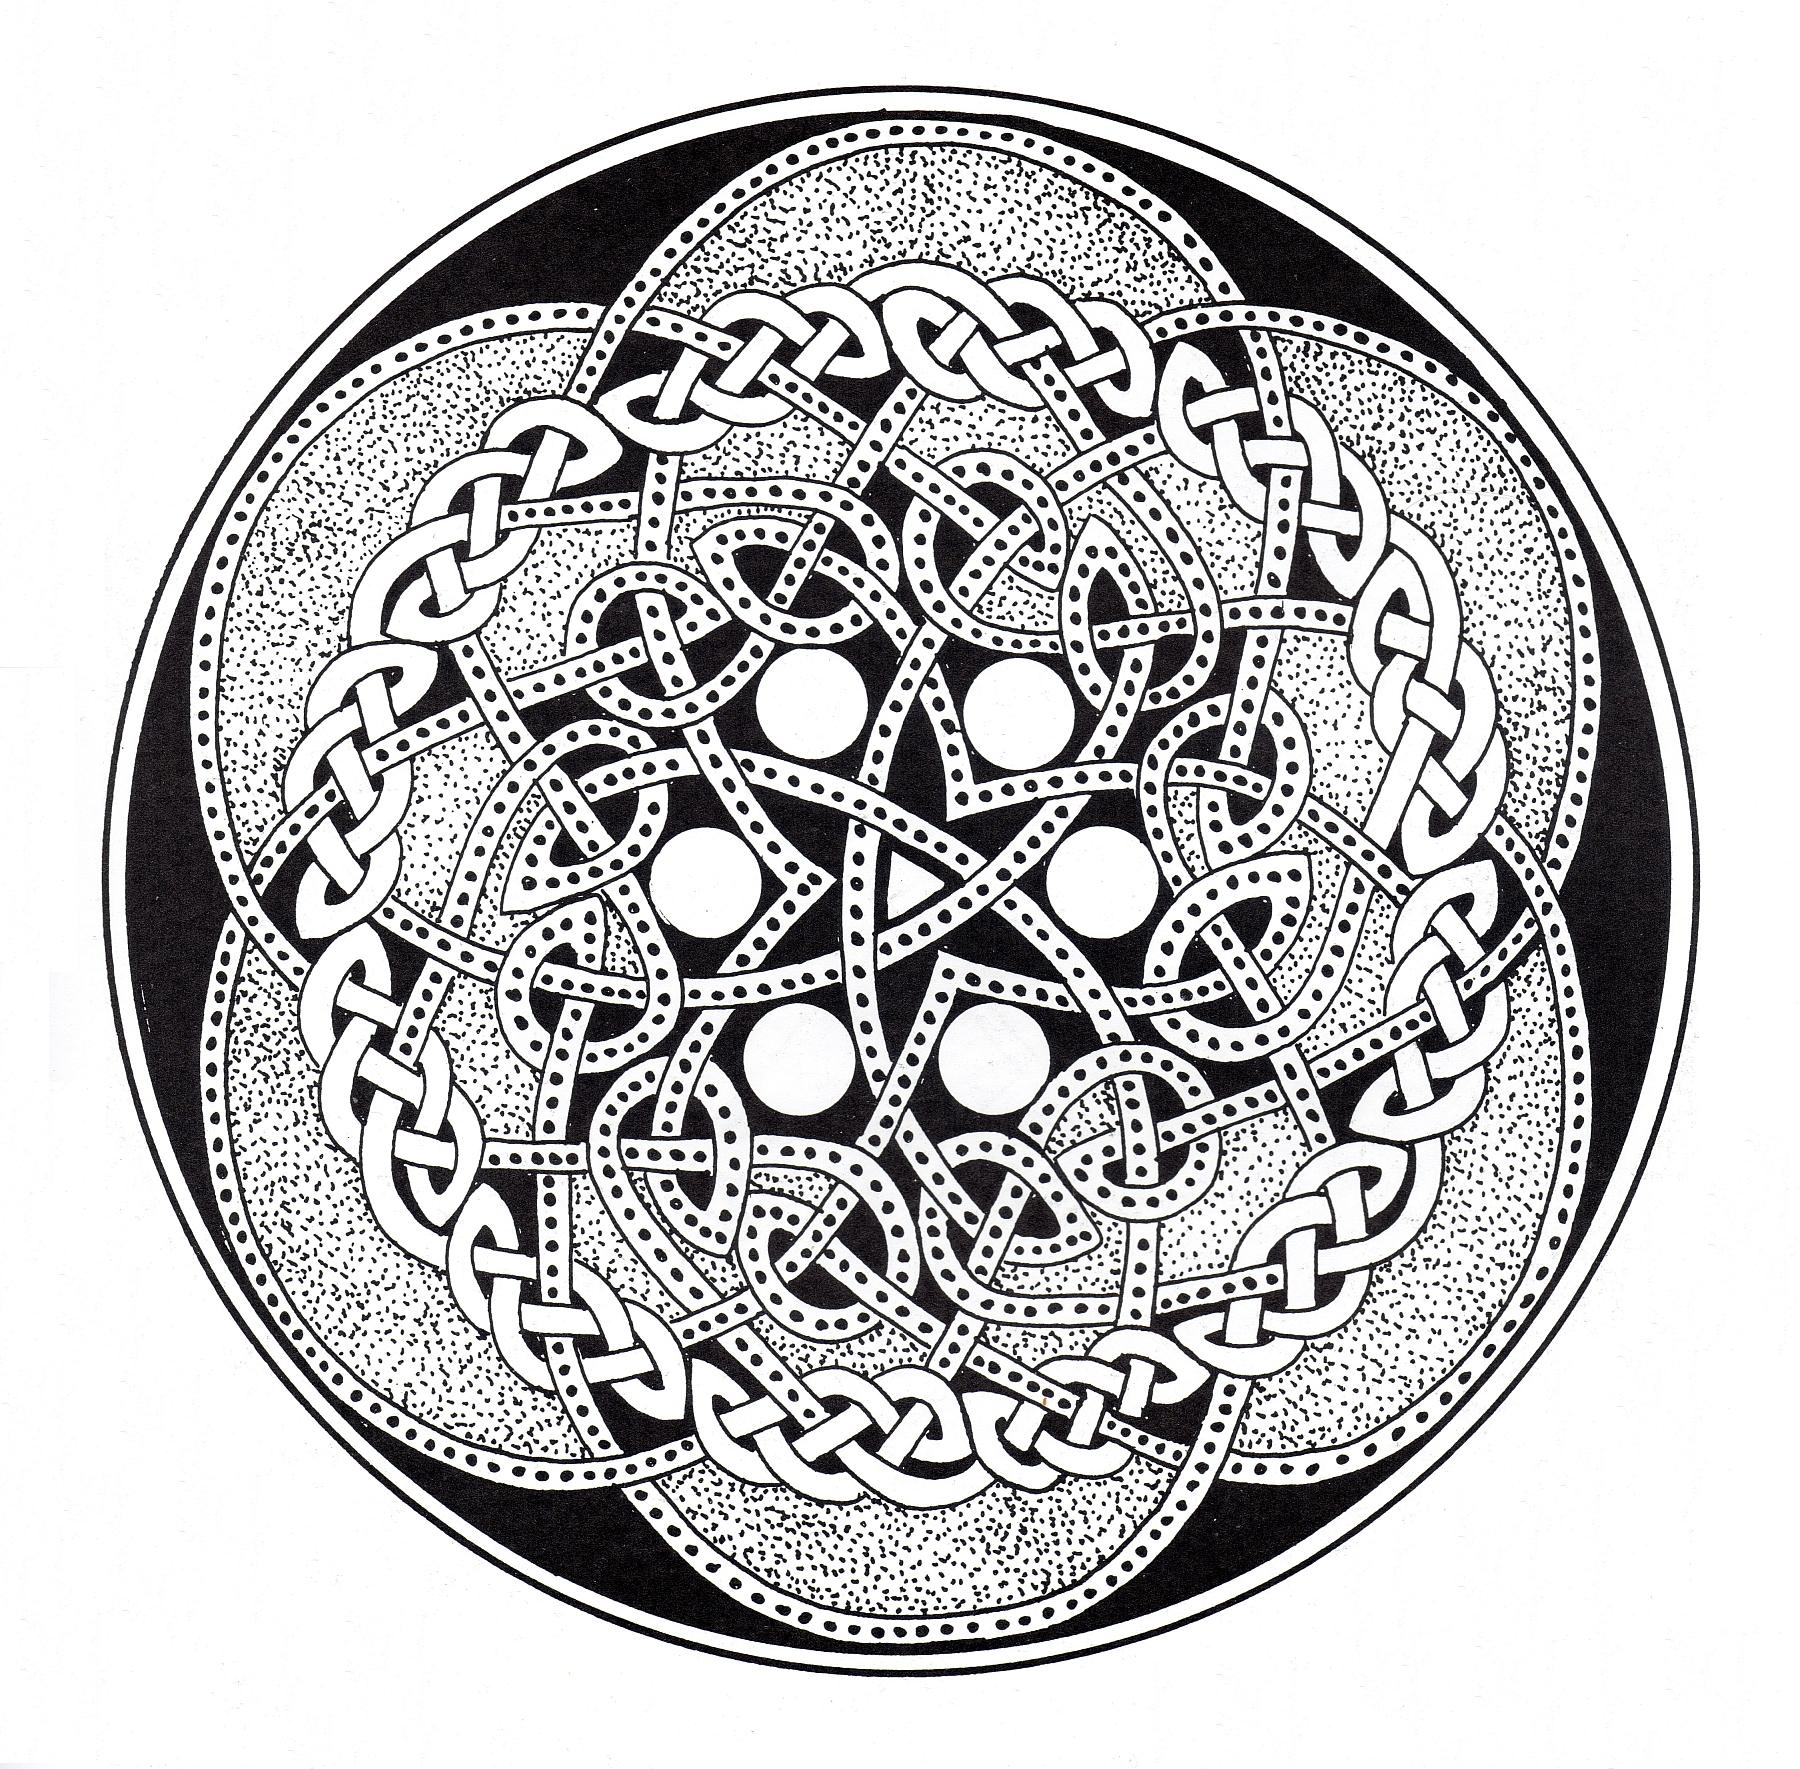 Wenn Sie bereit sind, lange Minuten der Entspannung zu verbringen, bereiten Sie sich darauf vor, dieses recht komplexe keltische Mandala in Schwarz & Weiß auszumalen ... Sie können viele verschiedene Farben verwenden, wenn Sie möchten.